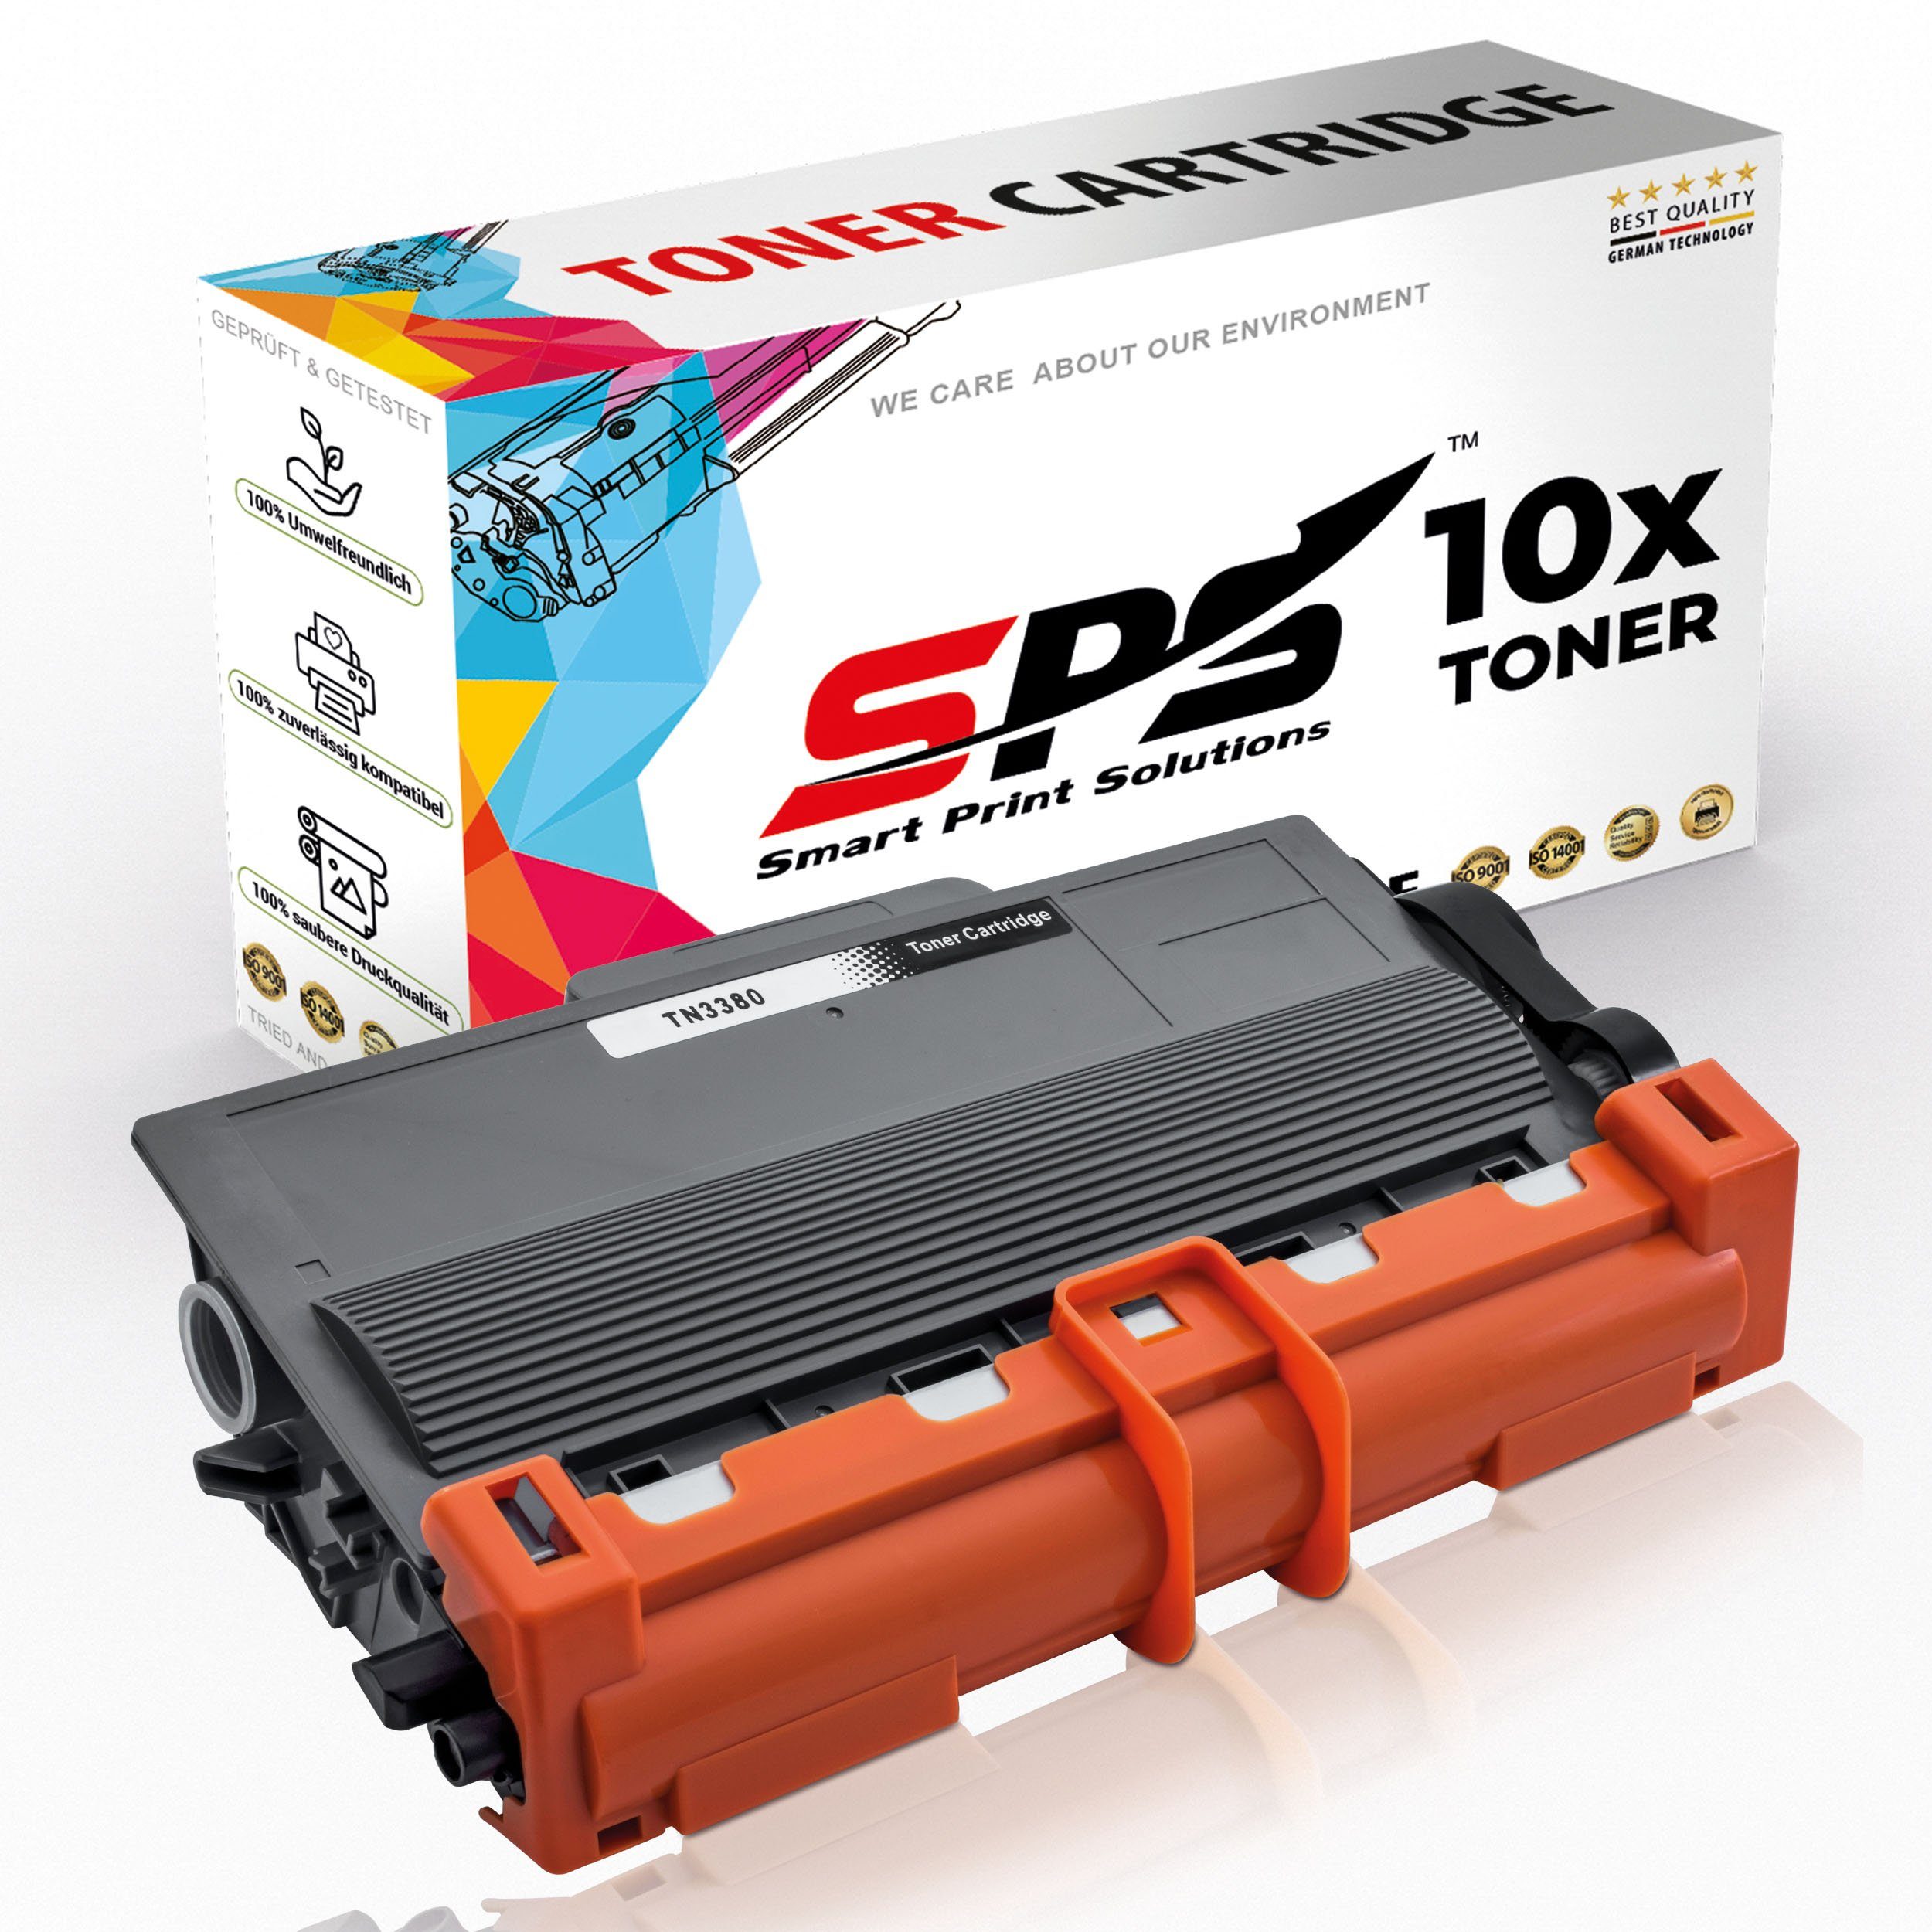 SPS Tonerkartusche Kompatibel für Brother MFC-8910 TN-3380, (10er Pack)